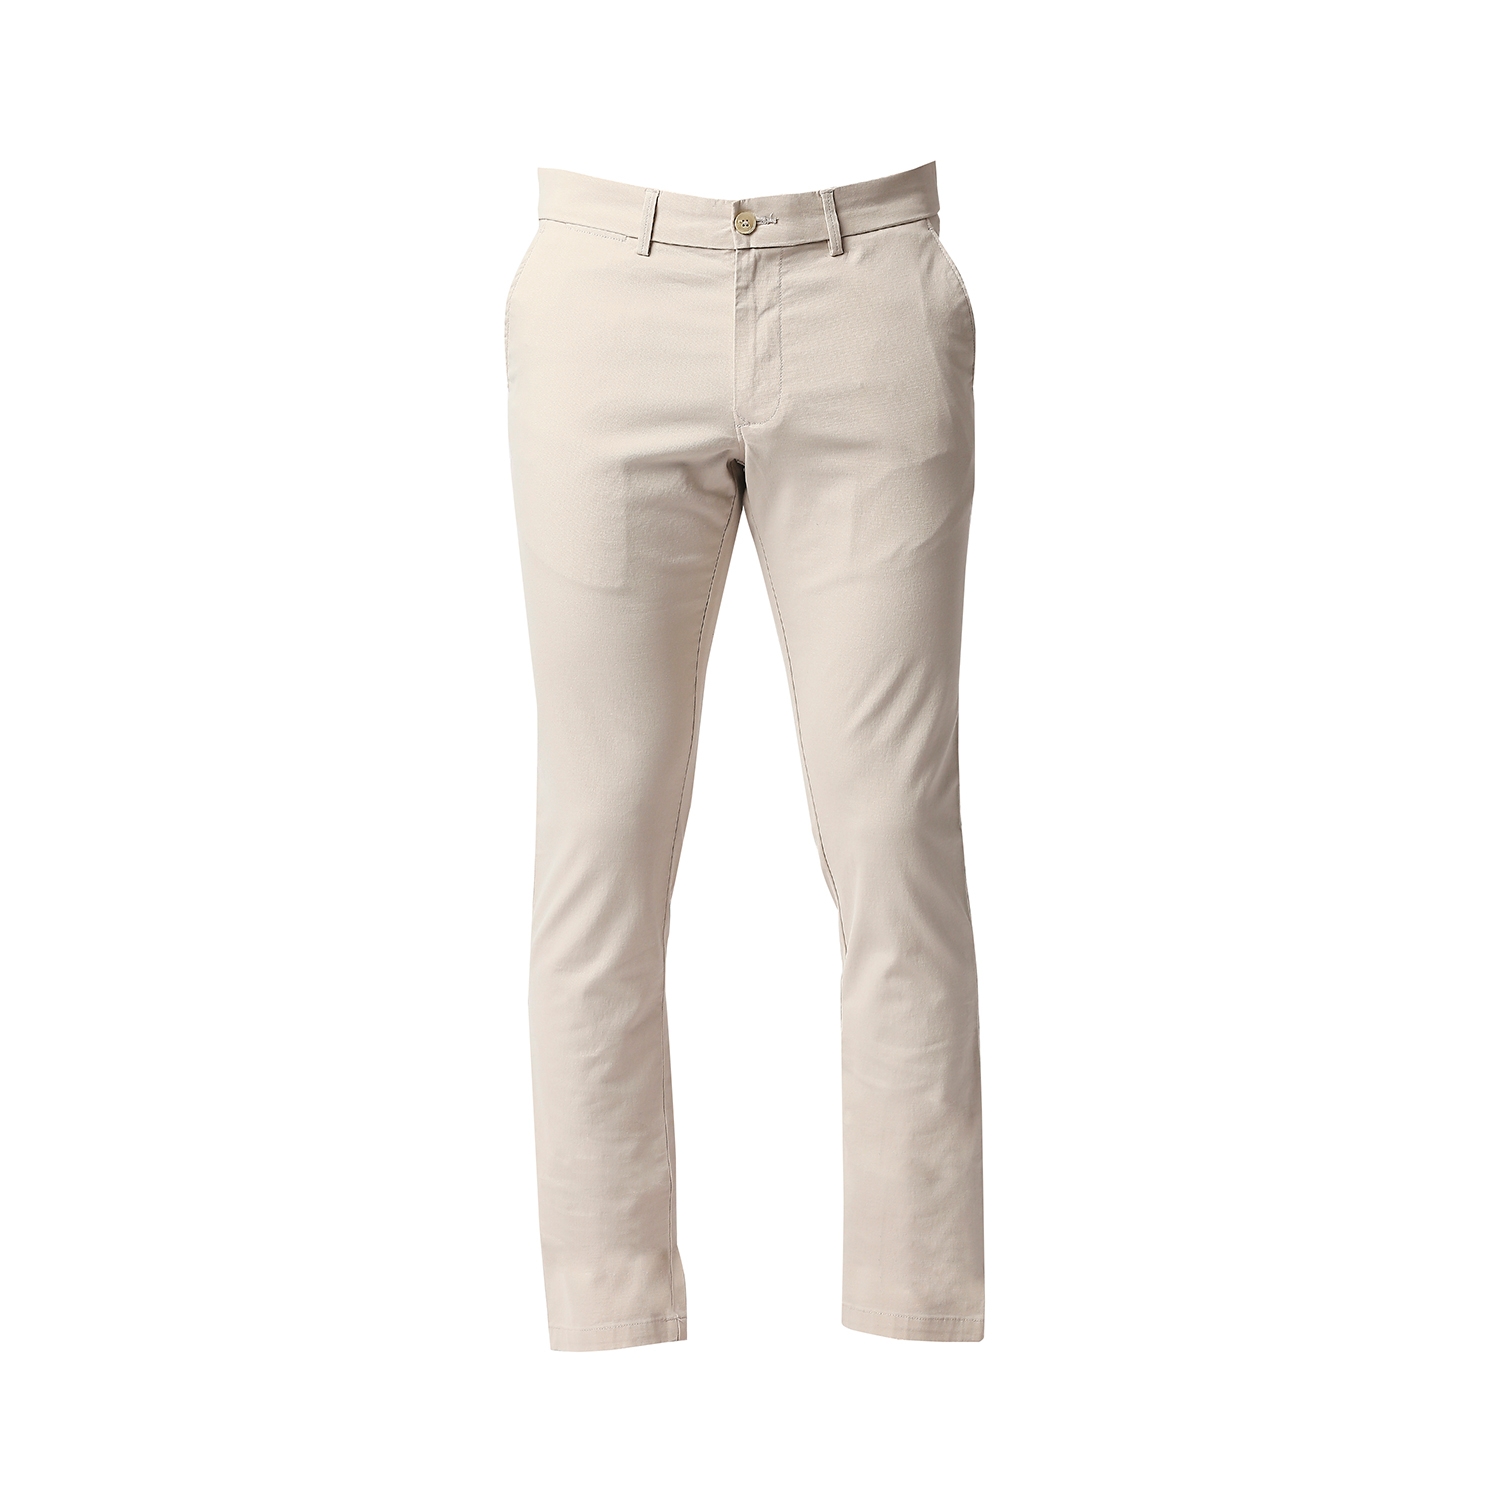 Basics | Men's Beige Cotton Blend Solid Trouser 5